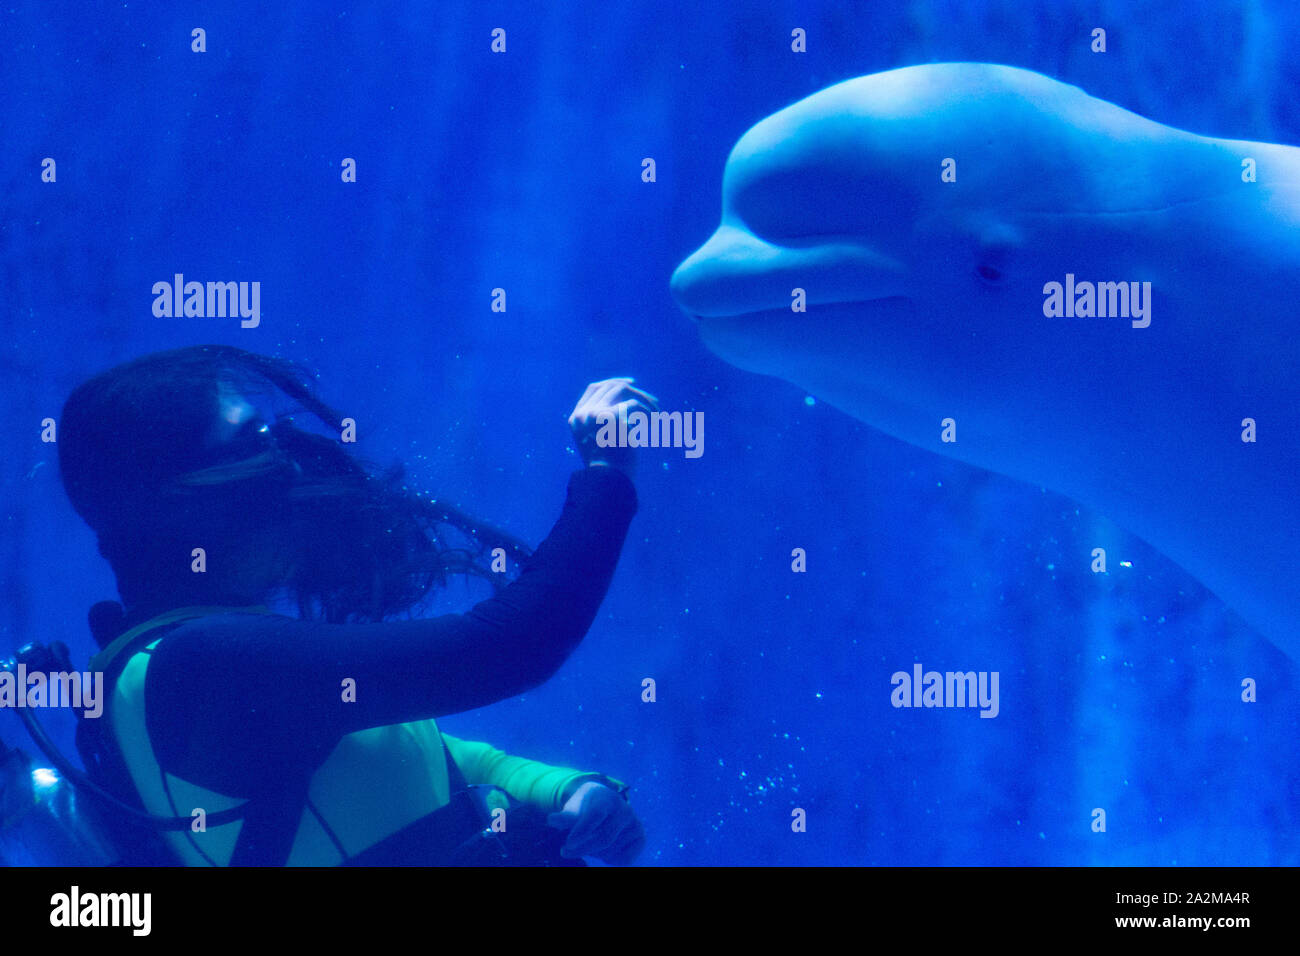 (191003) -- HARBIN, Ottobre 3, 2019 (Xinhua) -- Zang Mingyue e una balena beluga chiamato Mila eseguire a Harbin Polarland ad Harbin, capitale del nord-est della Cina di Provincia di Heilongjiang, Ottobre 2, 2019. Zang Mingyue ha deciso di diventare un istruttore di balene beluga dopo che è stato toccato da una prestazione del mammifero marino quando lei era la guida di un gruppo turistico. Ella si dimise nel 2012 quando aveva 23 anni, e rivolta a lavorare a Harbin Polarland come un trainer. Lei ha superato una serie di difficoltà e si sforza di essere il meglio al suo lavoro. Lei sente che lei ama balene beluga più profondamente come ella sa m Foto Stock